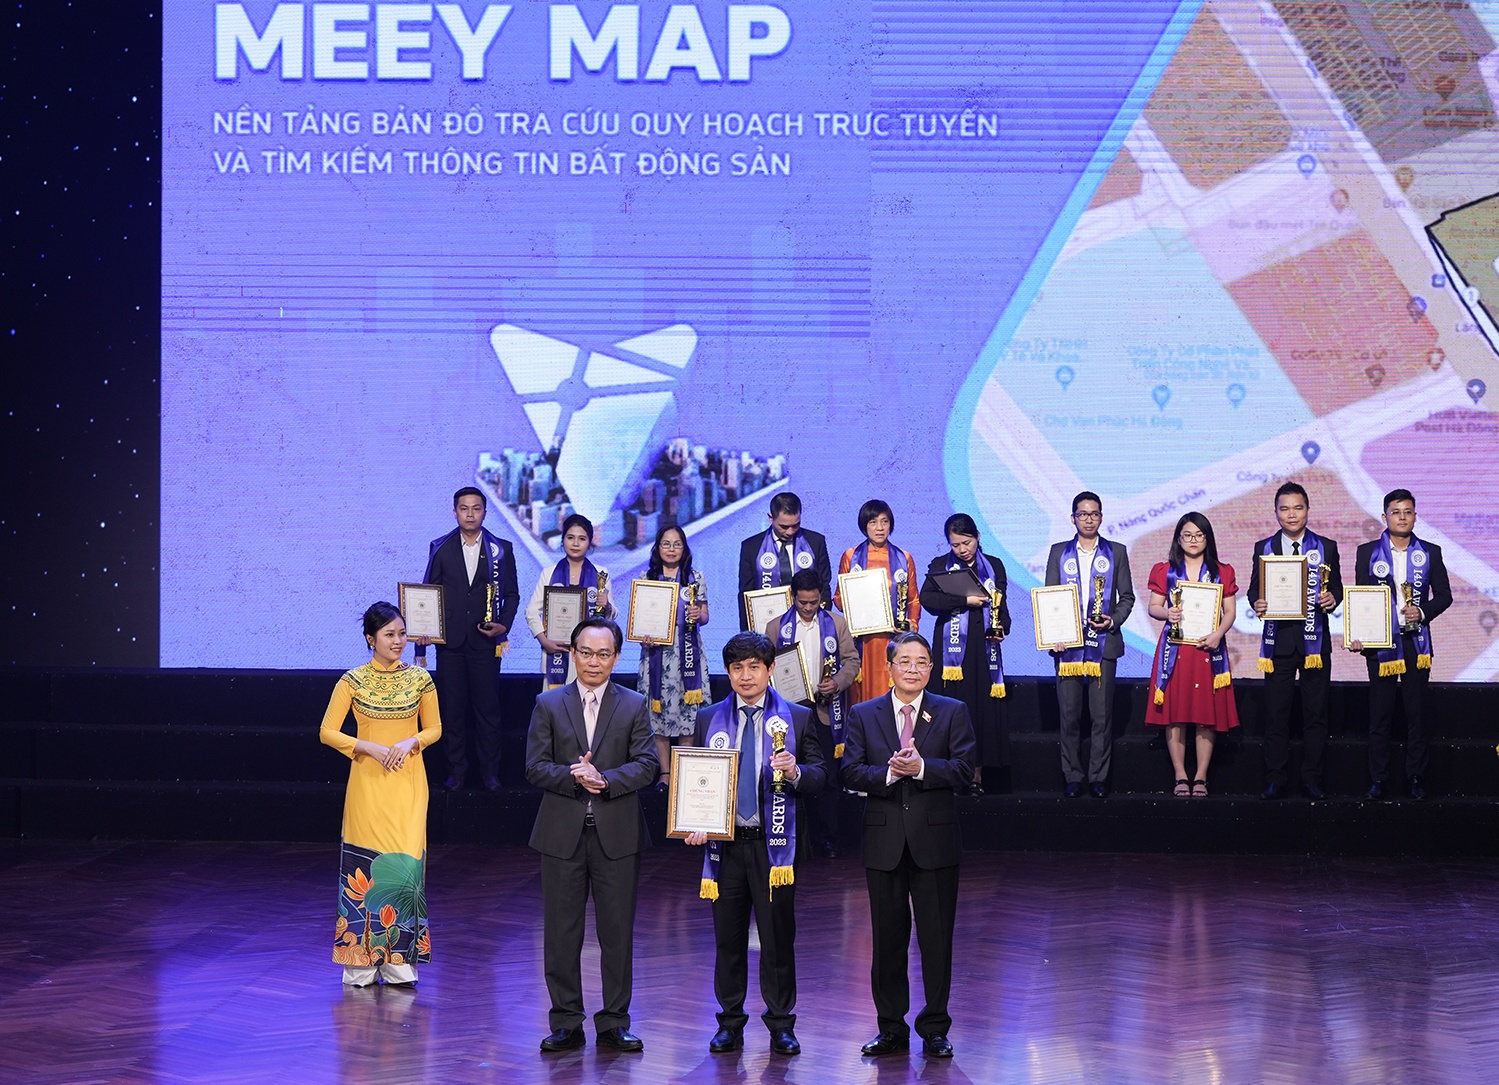 Giải pháp tra cứu quy hoạch thông minh Meey Map đạt giải I4.0 Awards - ảnh 1